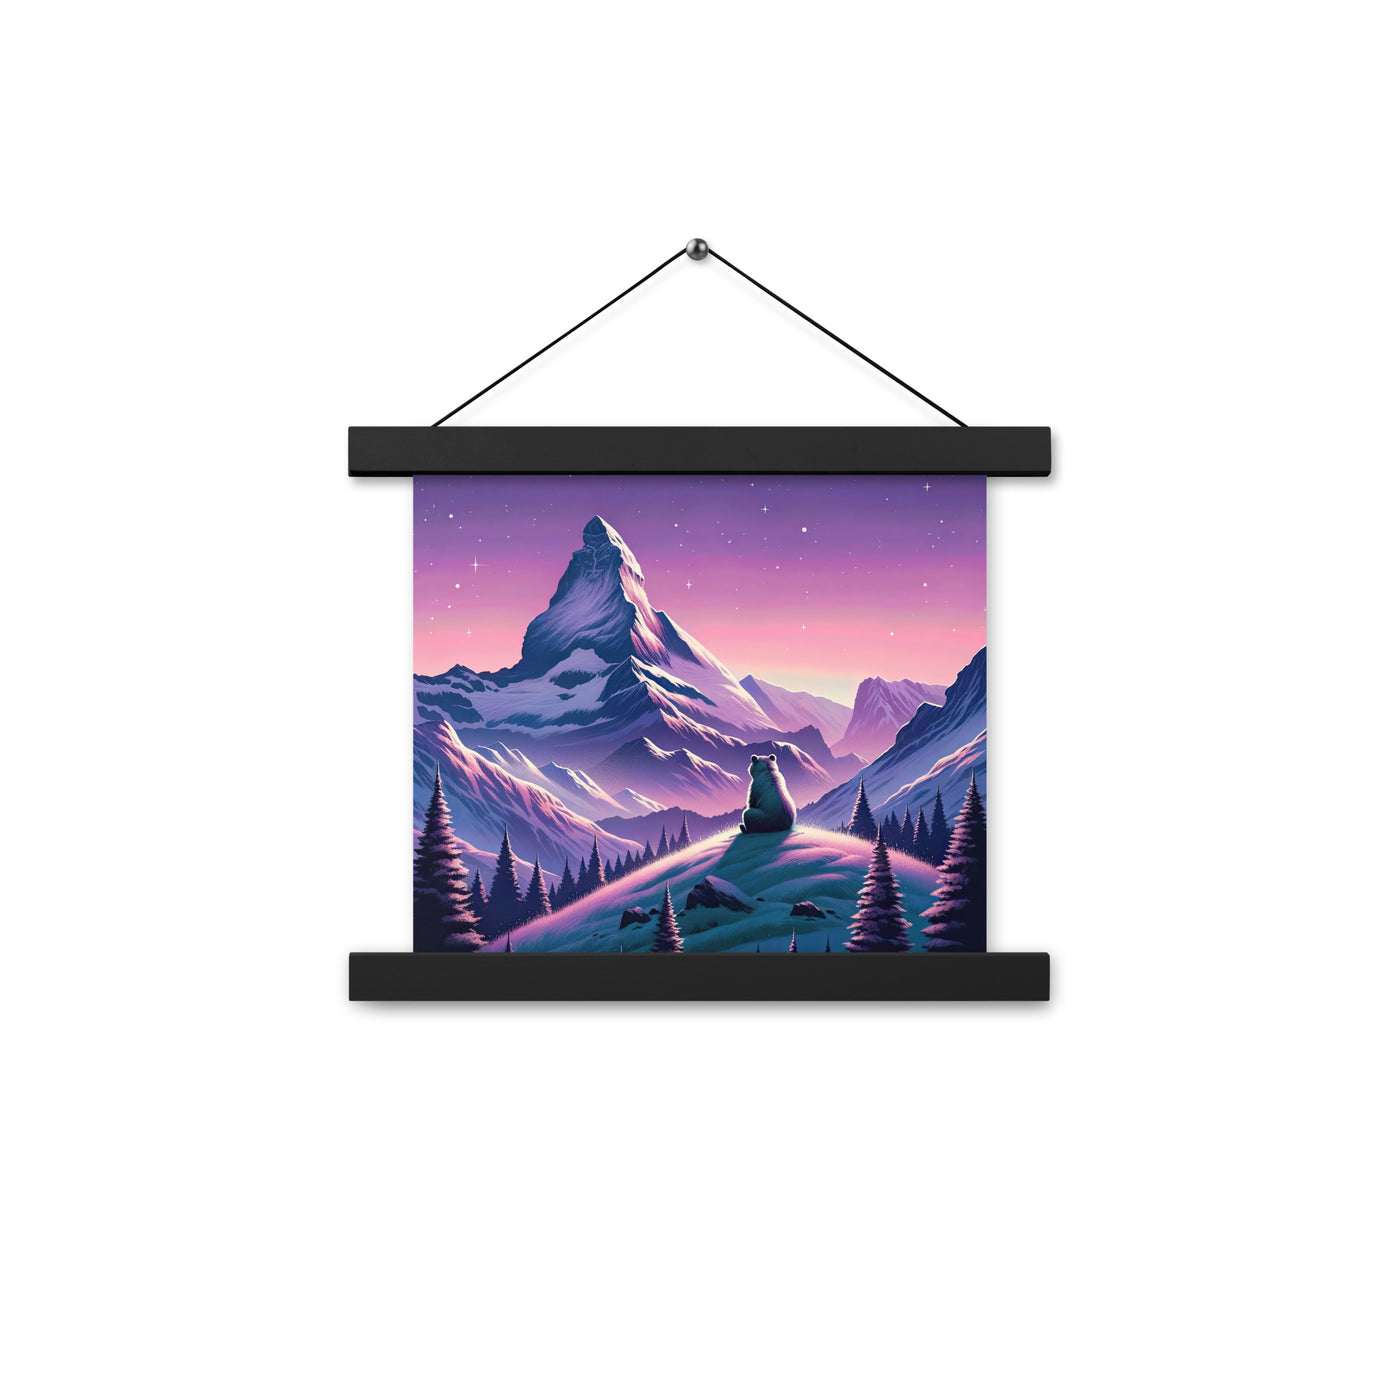 Bezaubernder Alpenabend mit Bär, lavendel-rosafarbener Himmel (AN) - Premium Poster mit Aufhängung xxx yyy zzz 25.4 x 25.4 cm